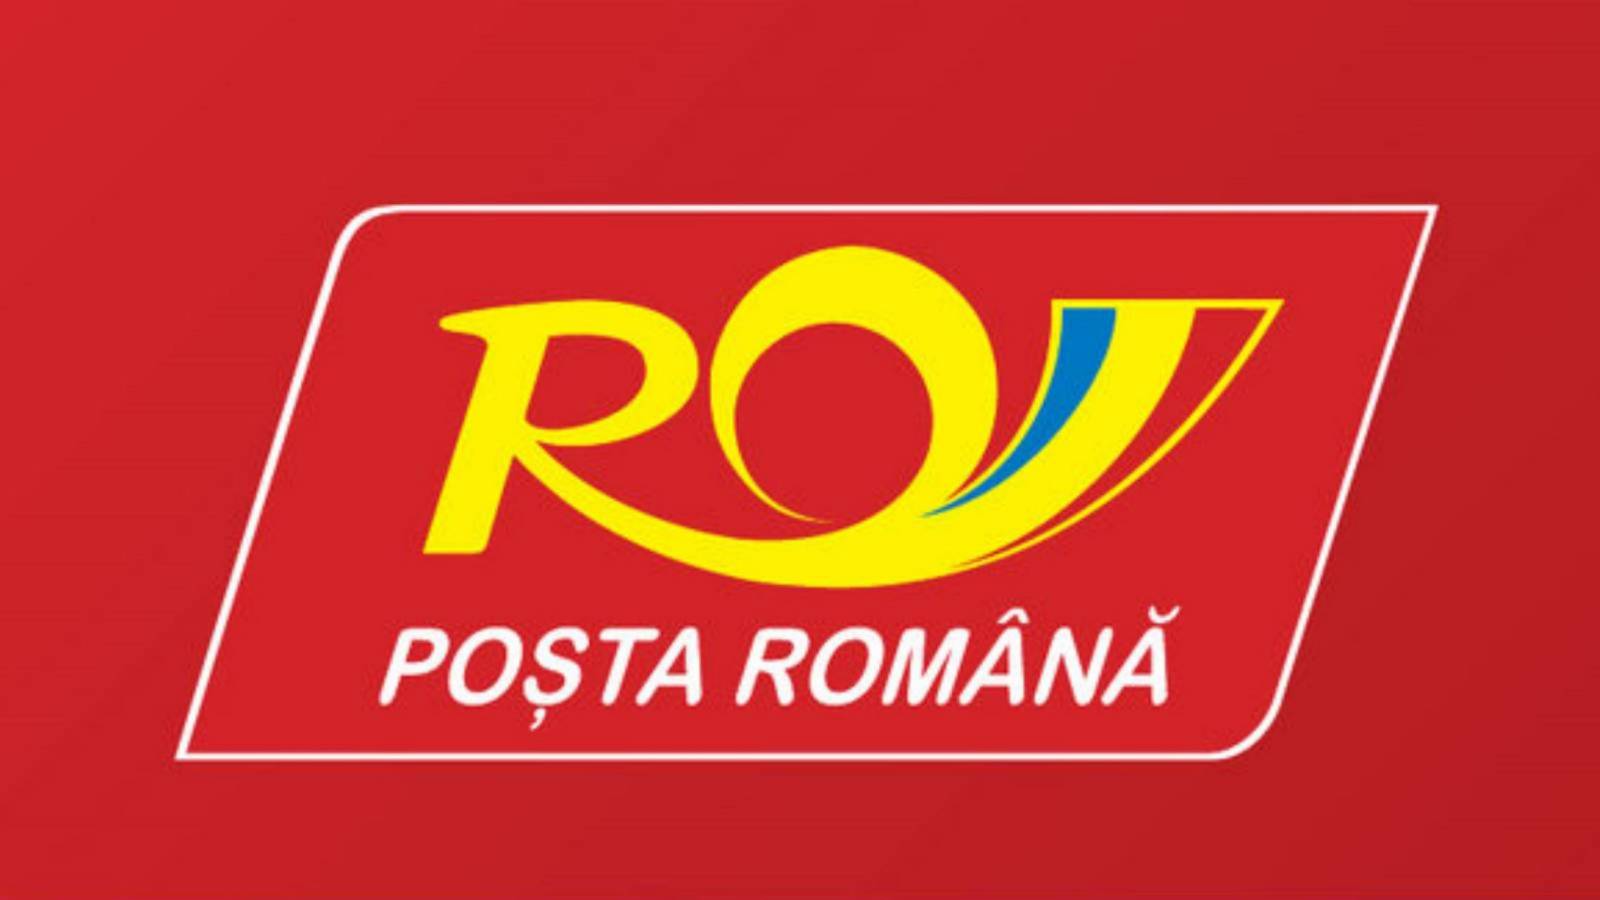 Varning Skadligt rumänskt inlägg